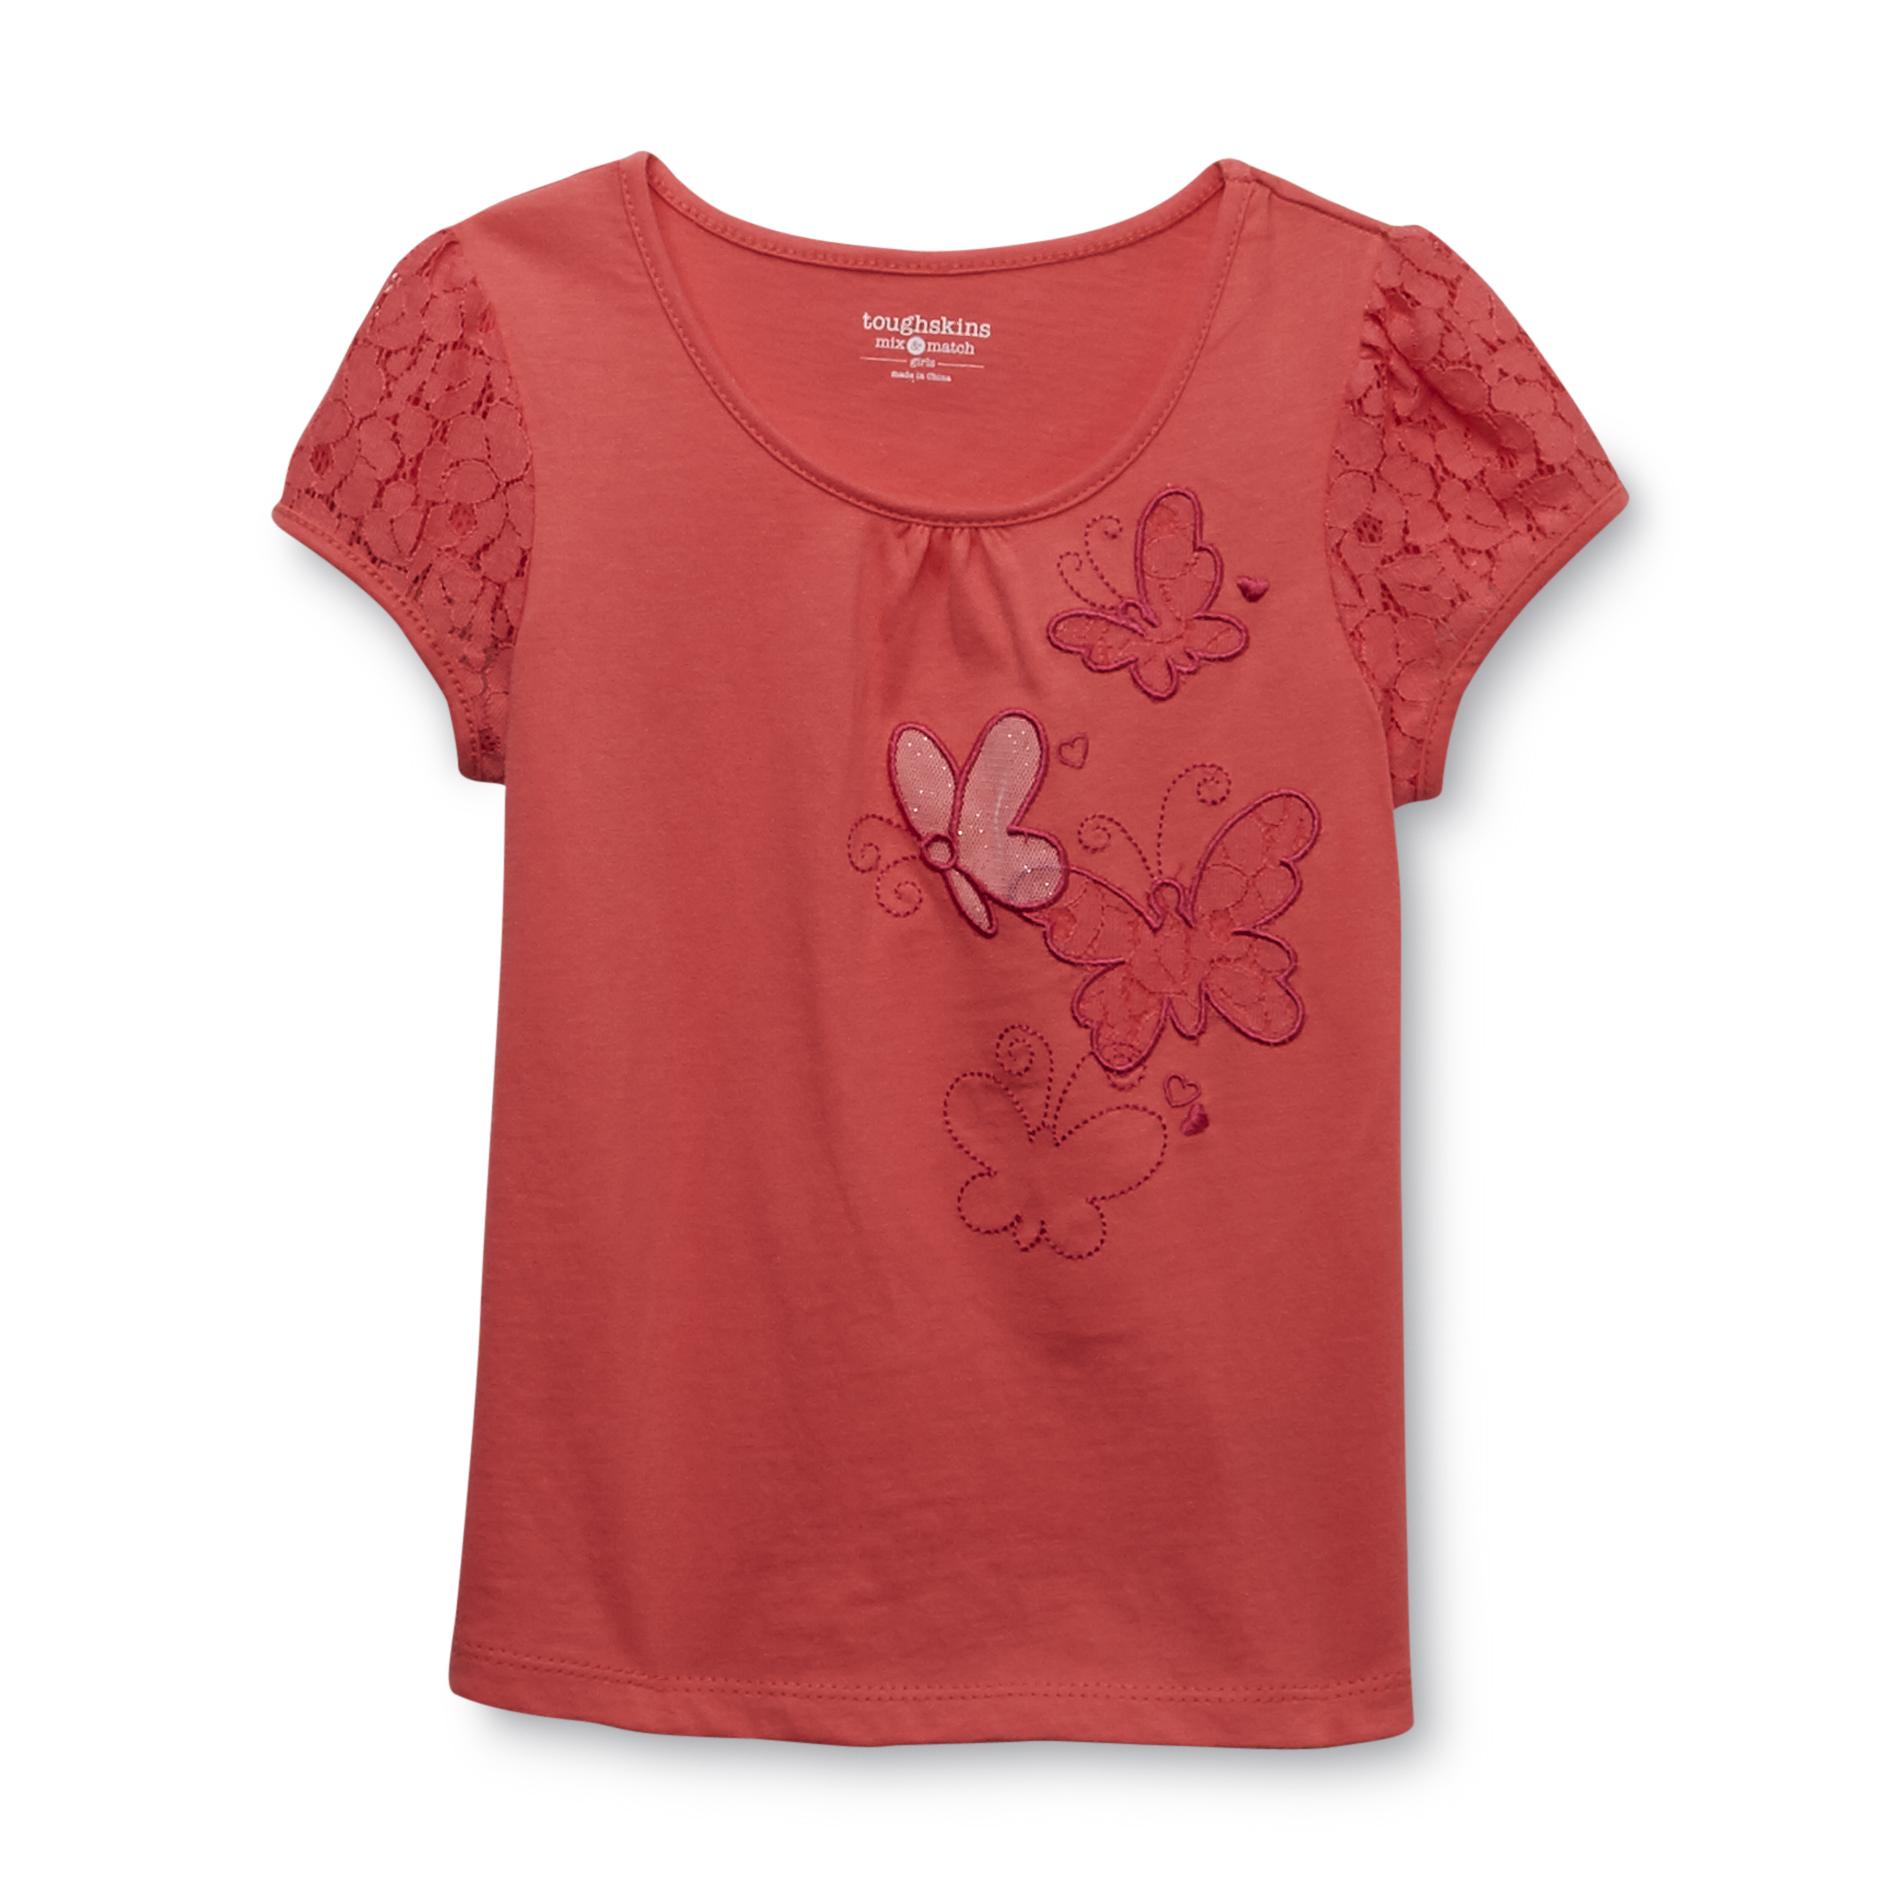 Toughskins Girl's Lace Cap Sleeve T-Shirt - Butterflies